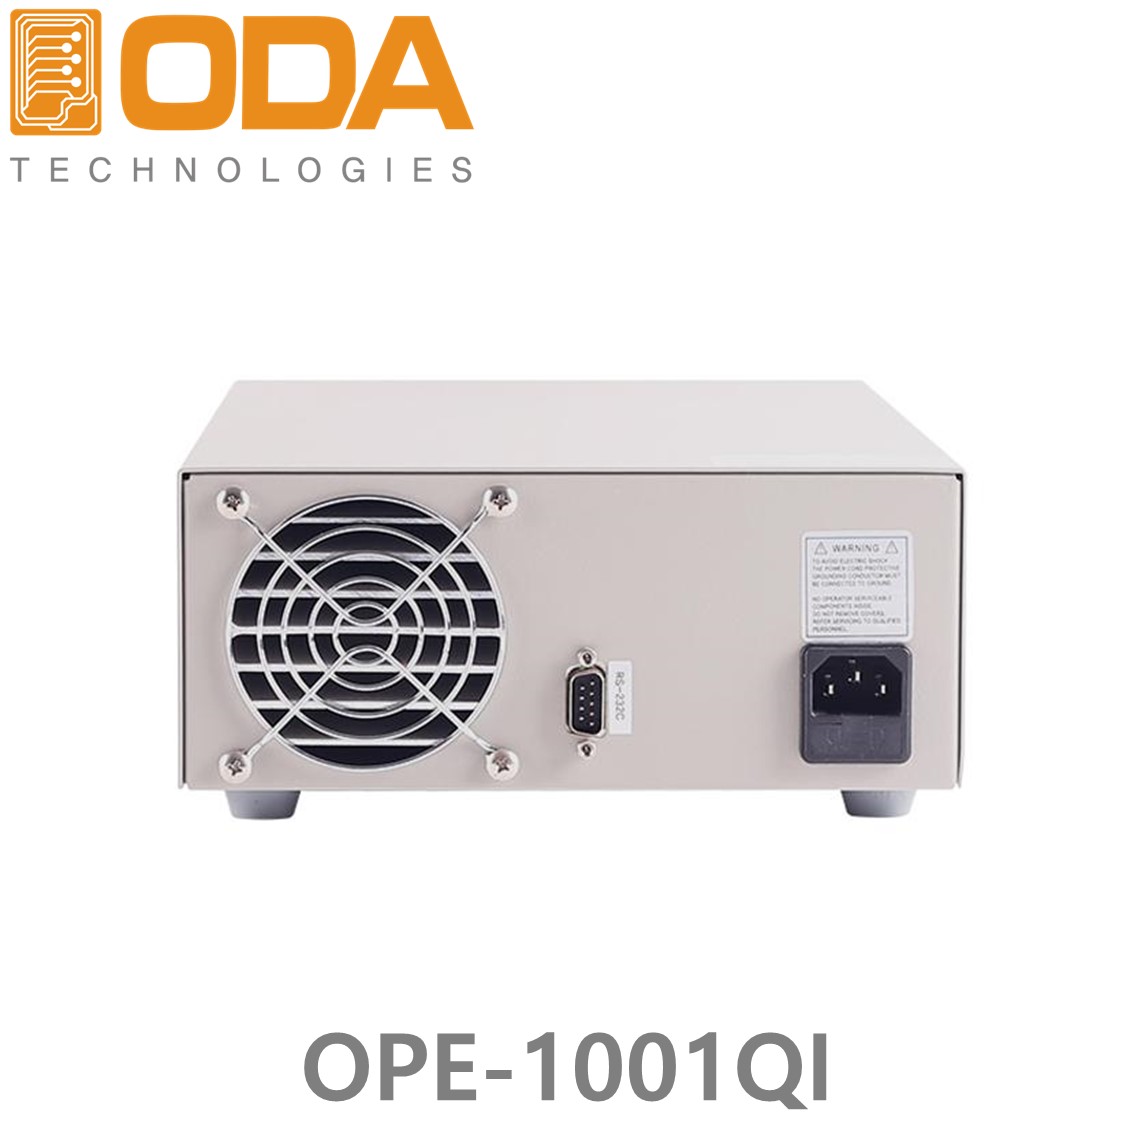 [ ODA ] OPE-1001QI,  ±100V/1A x 2채널, 5V(or 3.3V)/2A x 1채널, 15V(or 12V)/1A x 1채널 240W